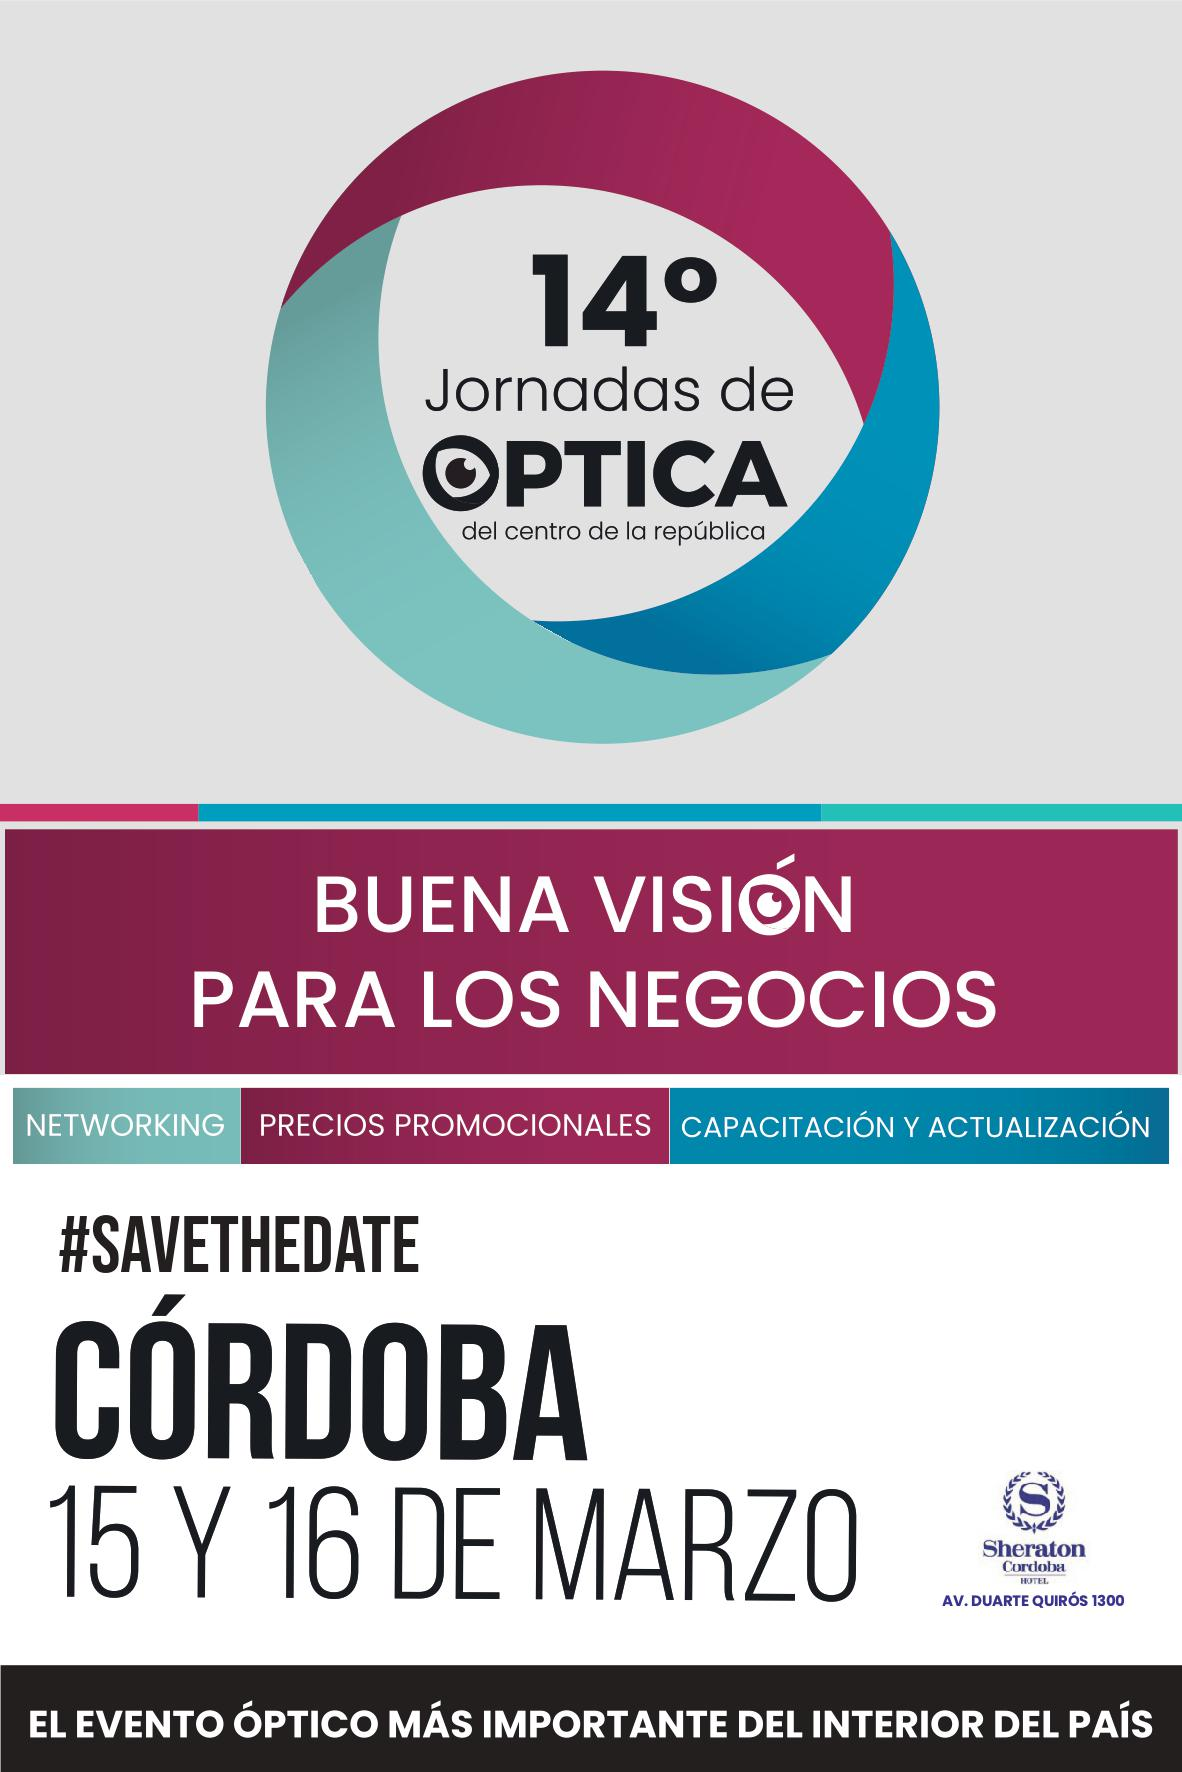 14 Jornadas de Óptica en Argentina